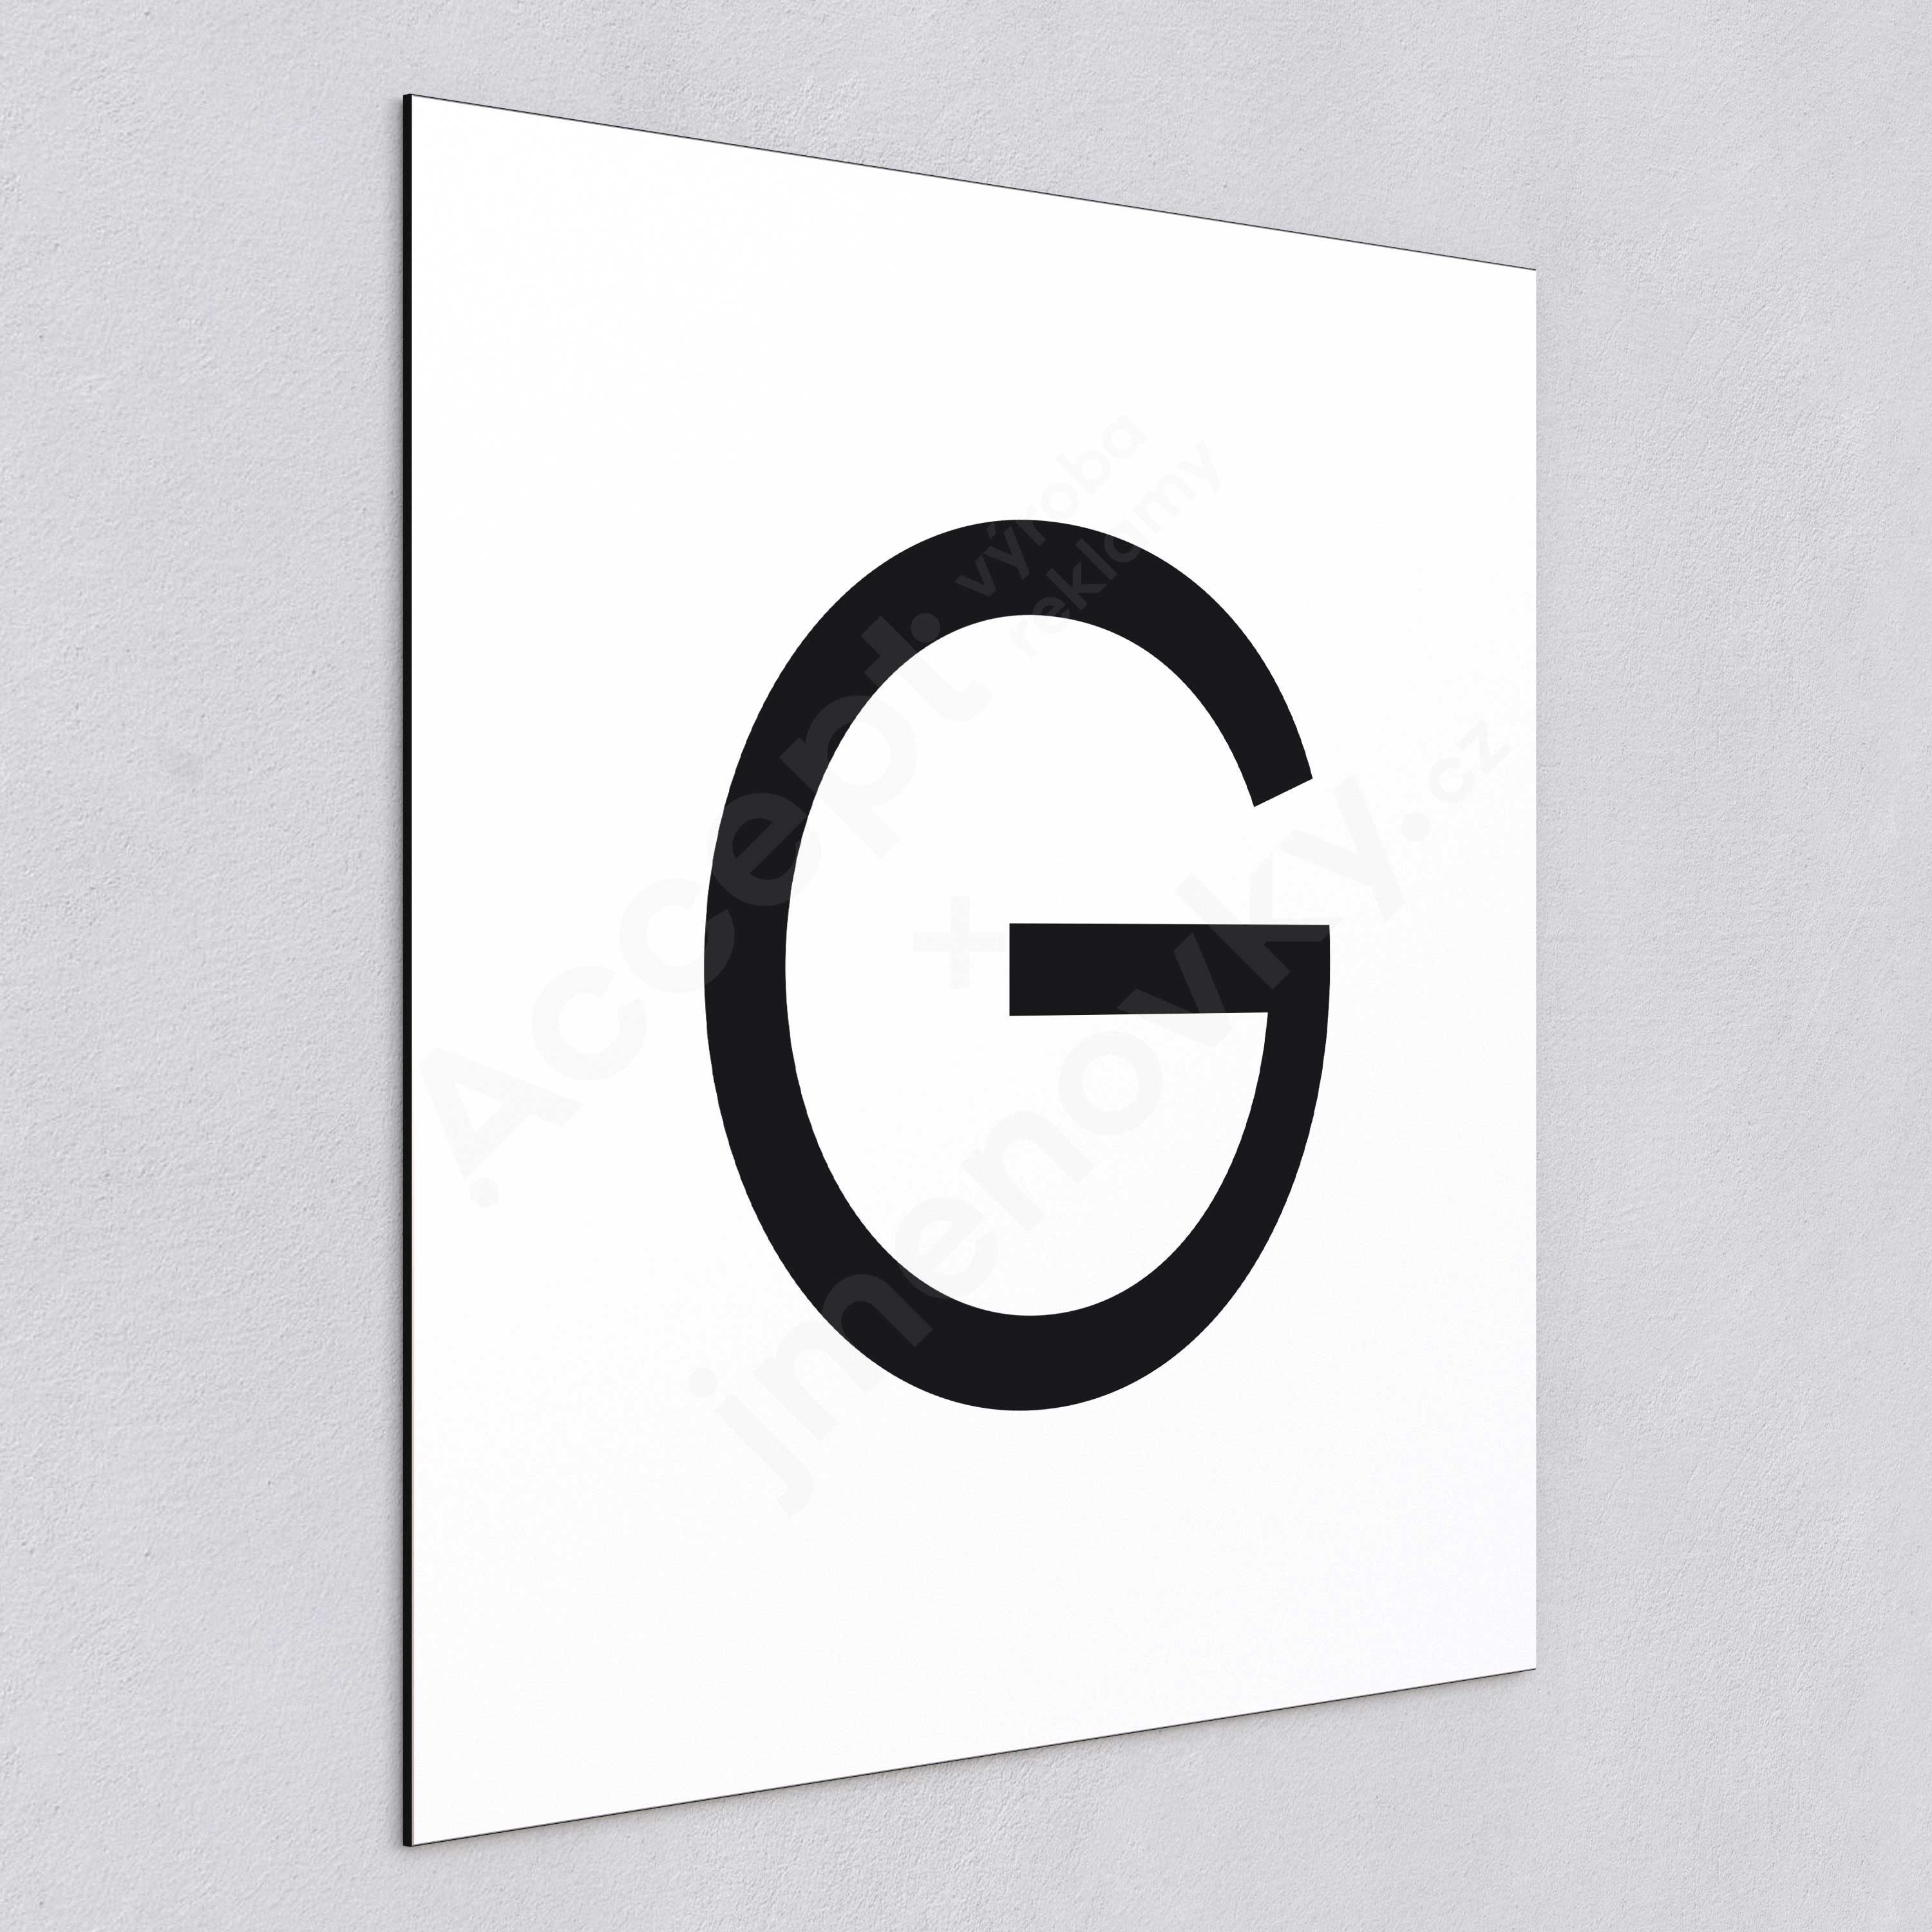 Označení podlaží - písmeno "G" - bílá tabulka - černý popis